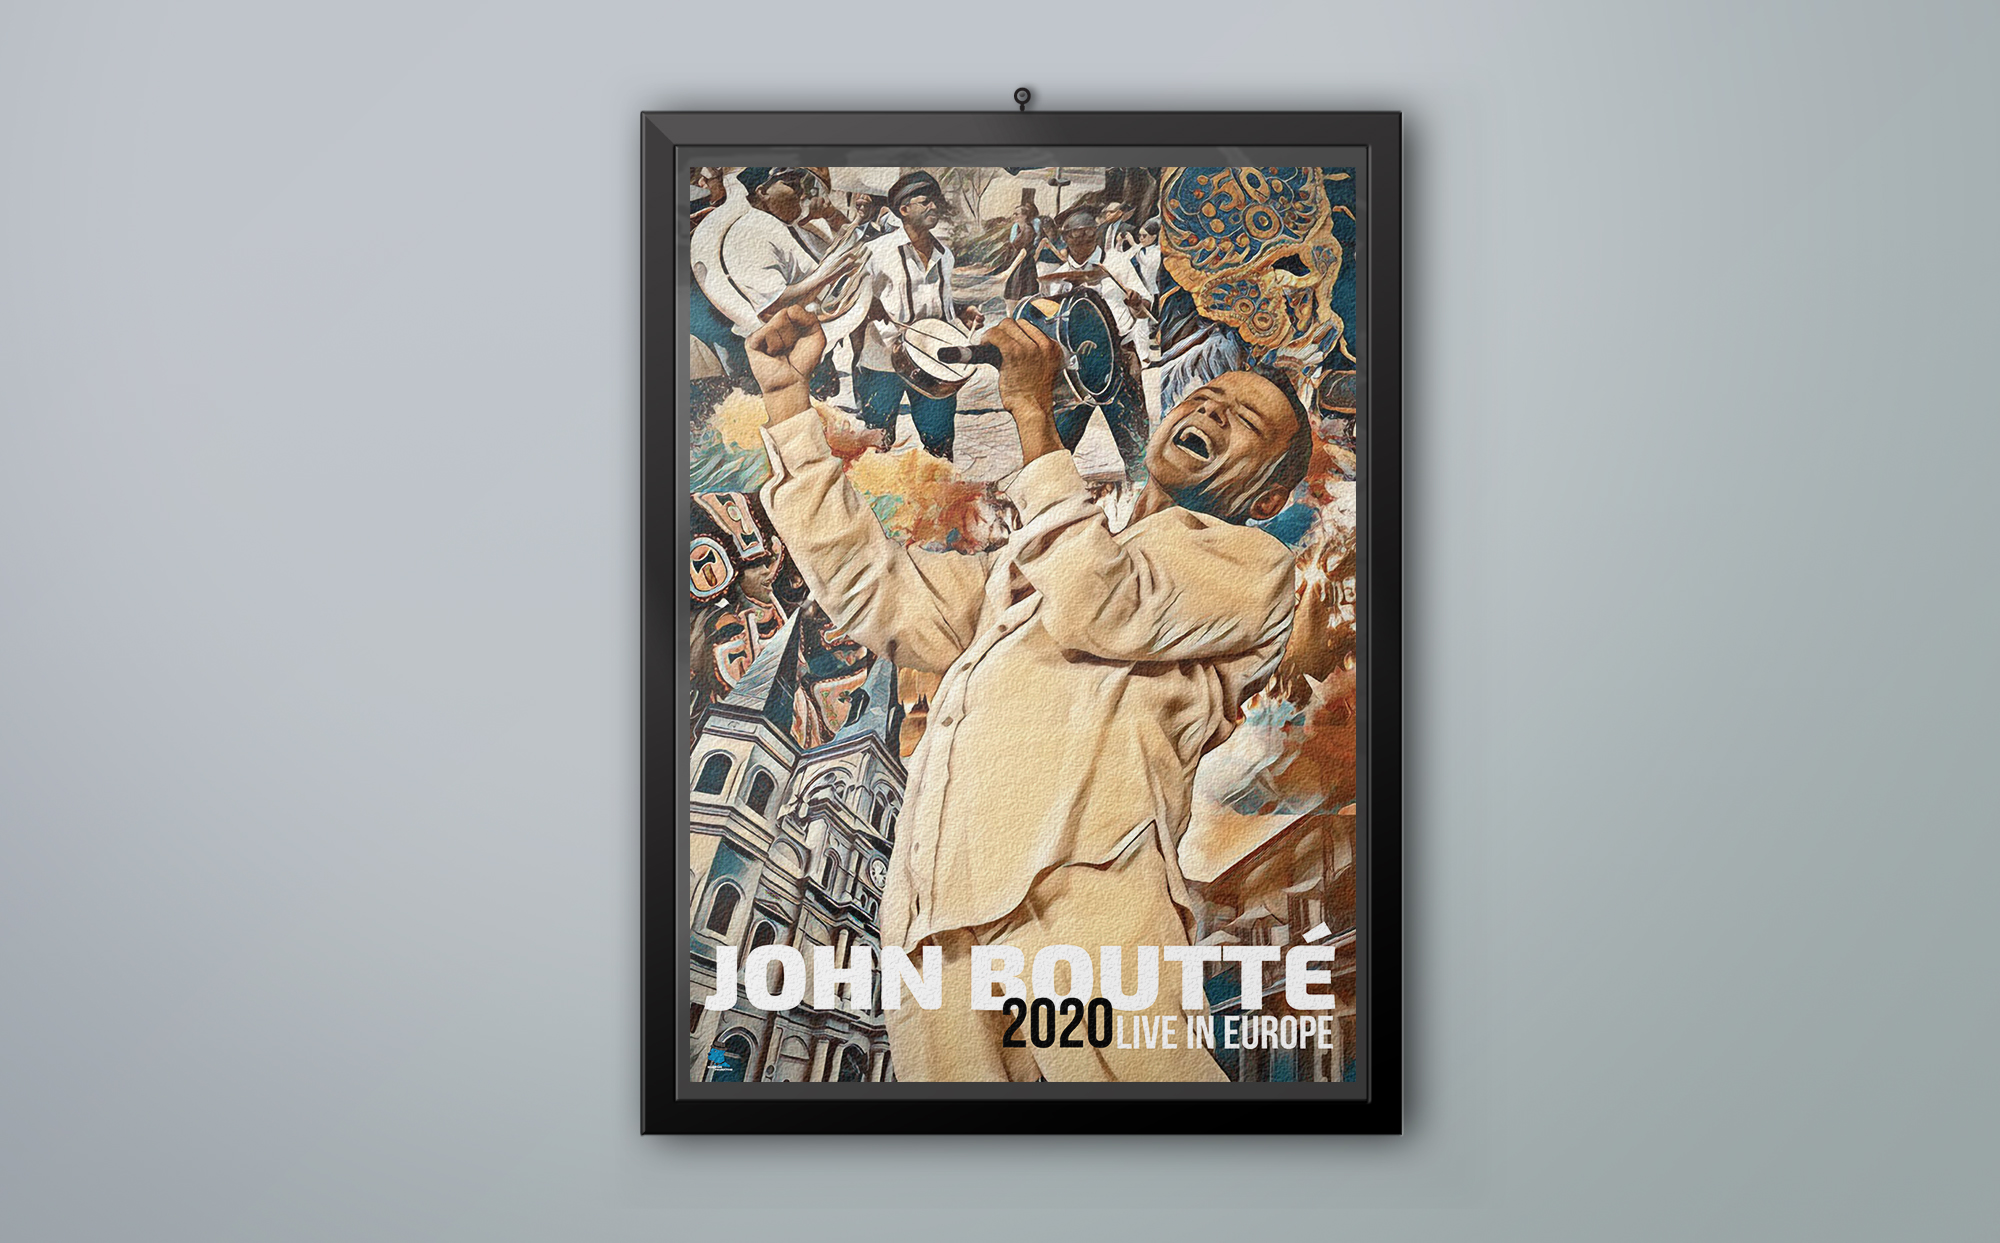 Poster Design for John Boutté 2020 European Tour